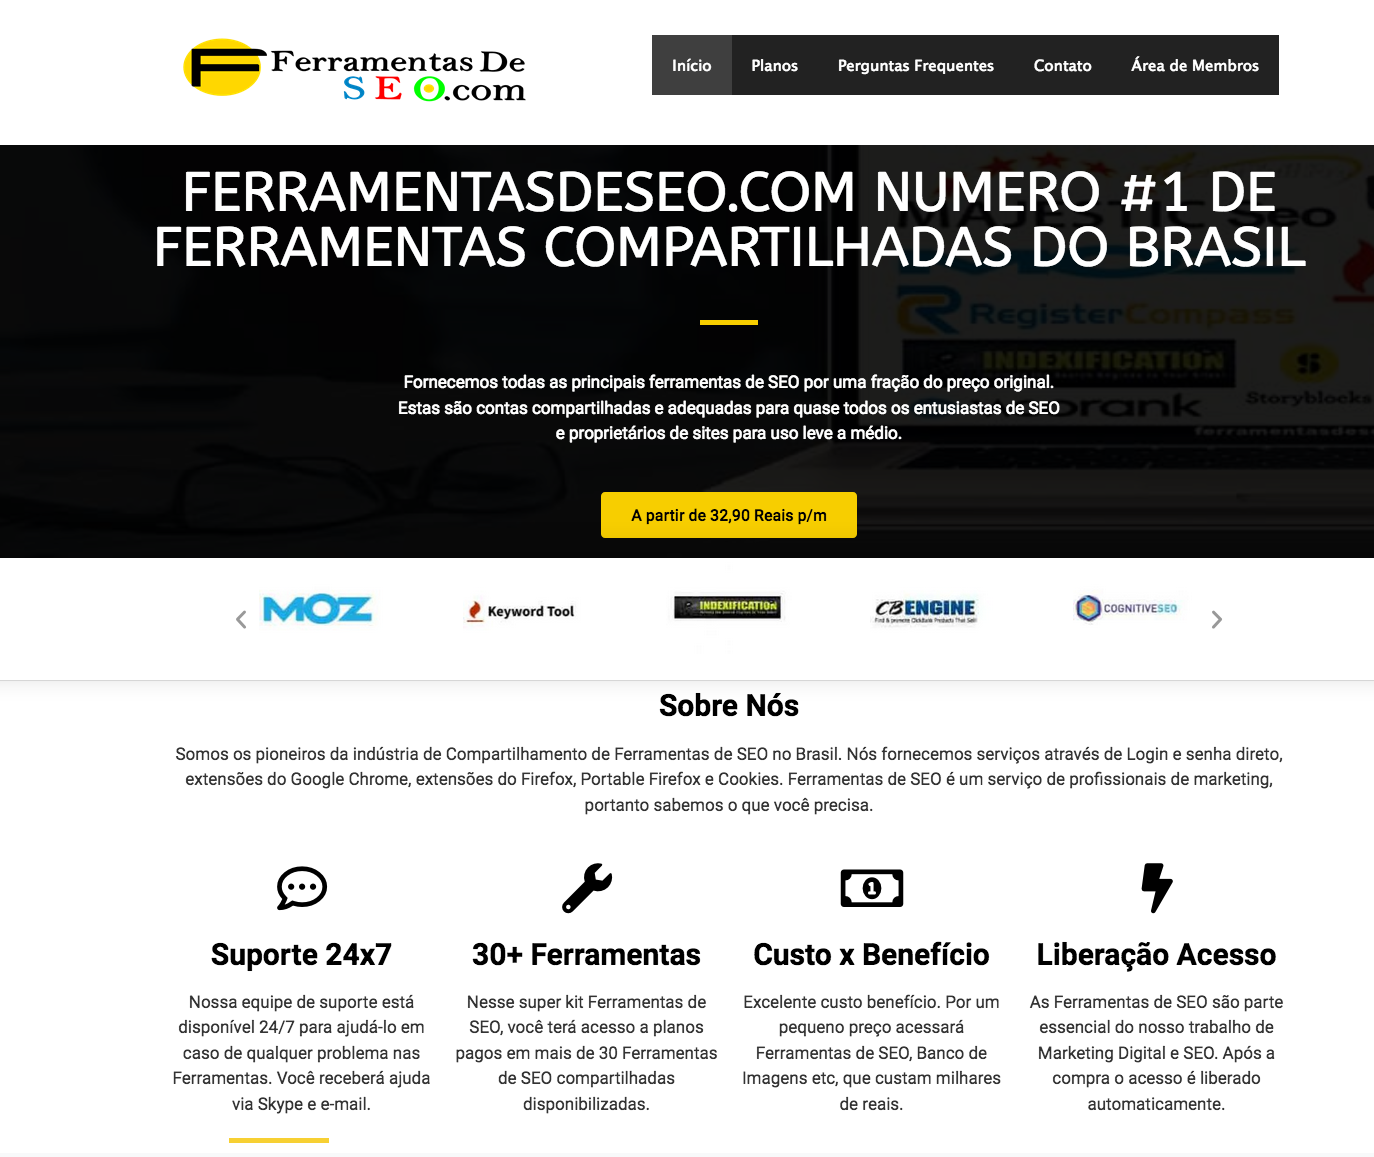 Ferramentas de seo compartilhadas numero #1 de ferramentas compartilhadas do Brasil que ano tem suporte e nem respostas ao consumidor